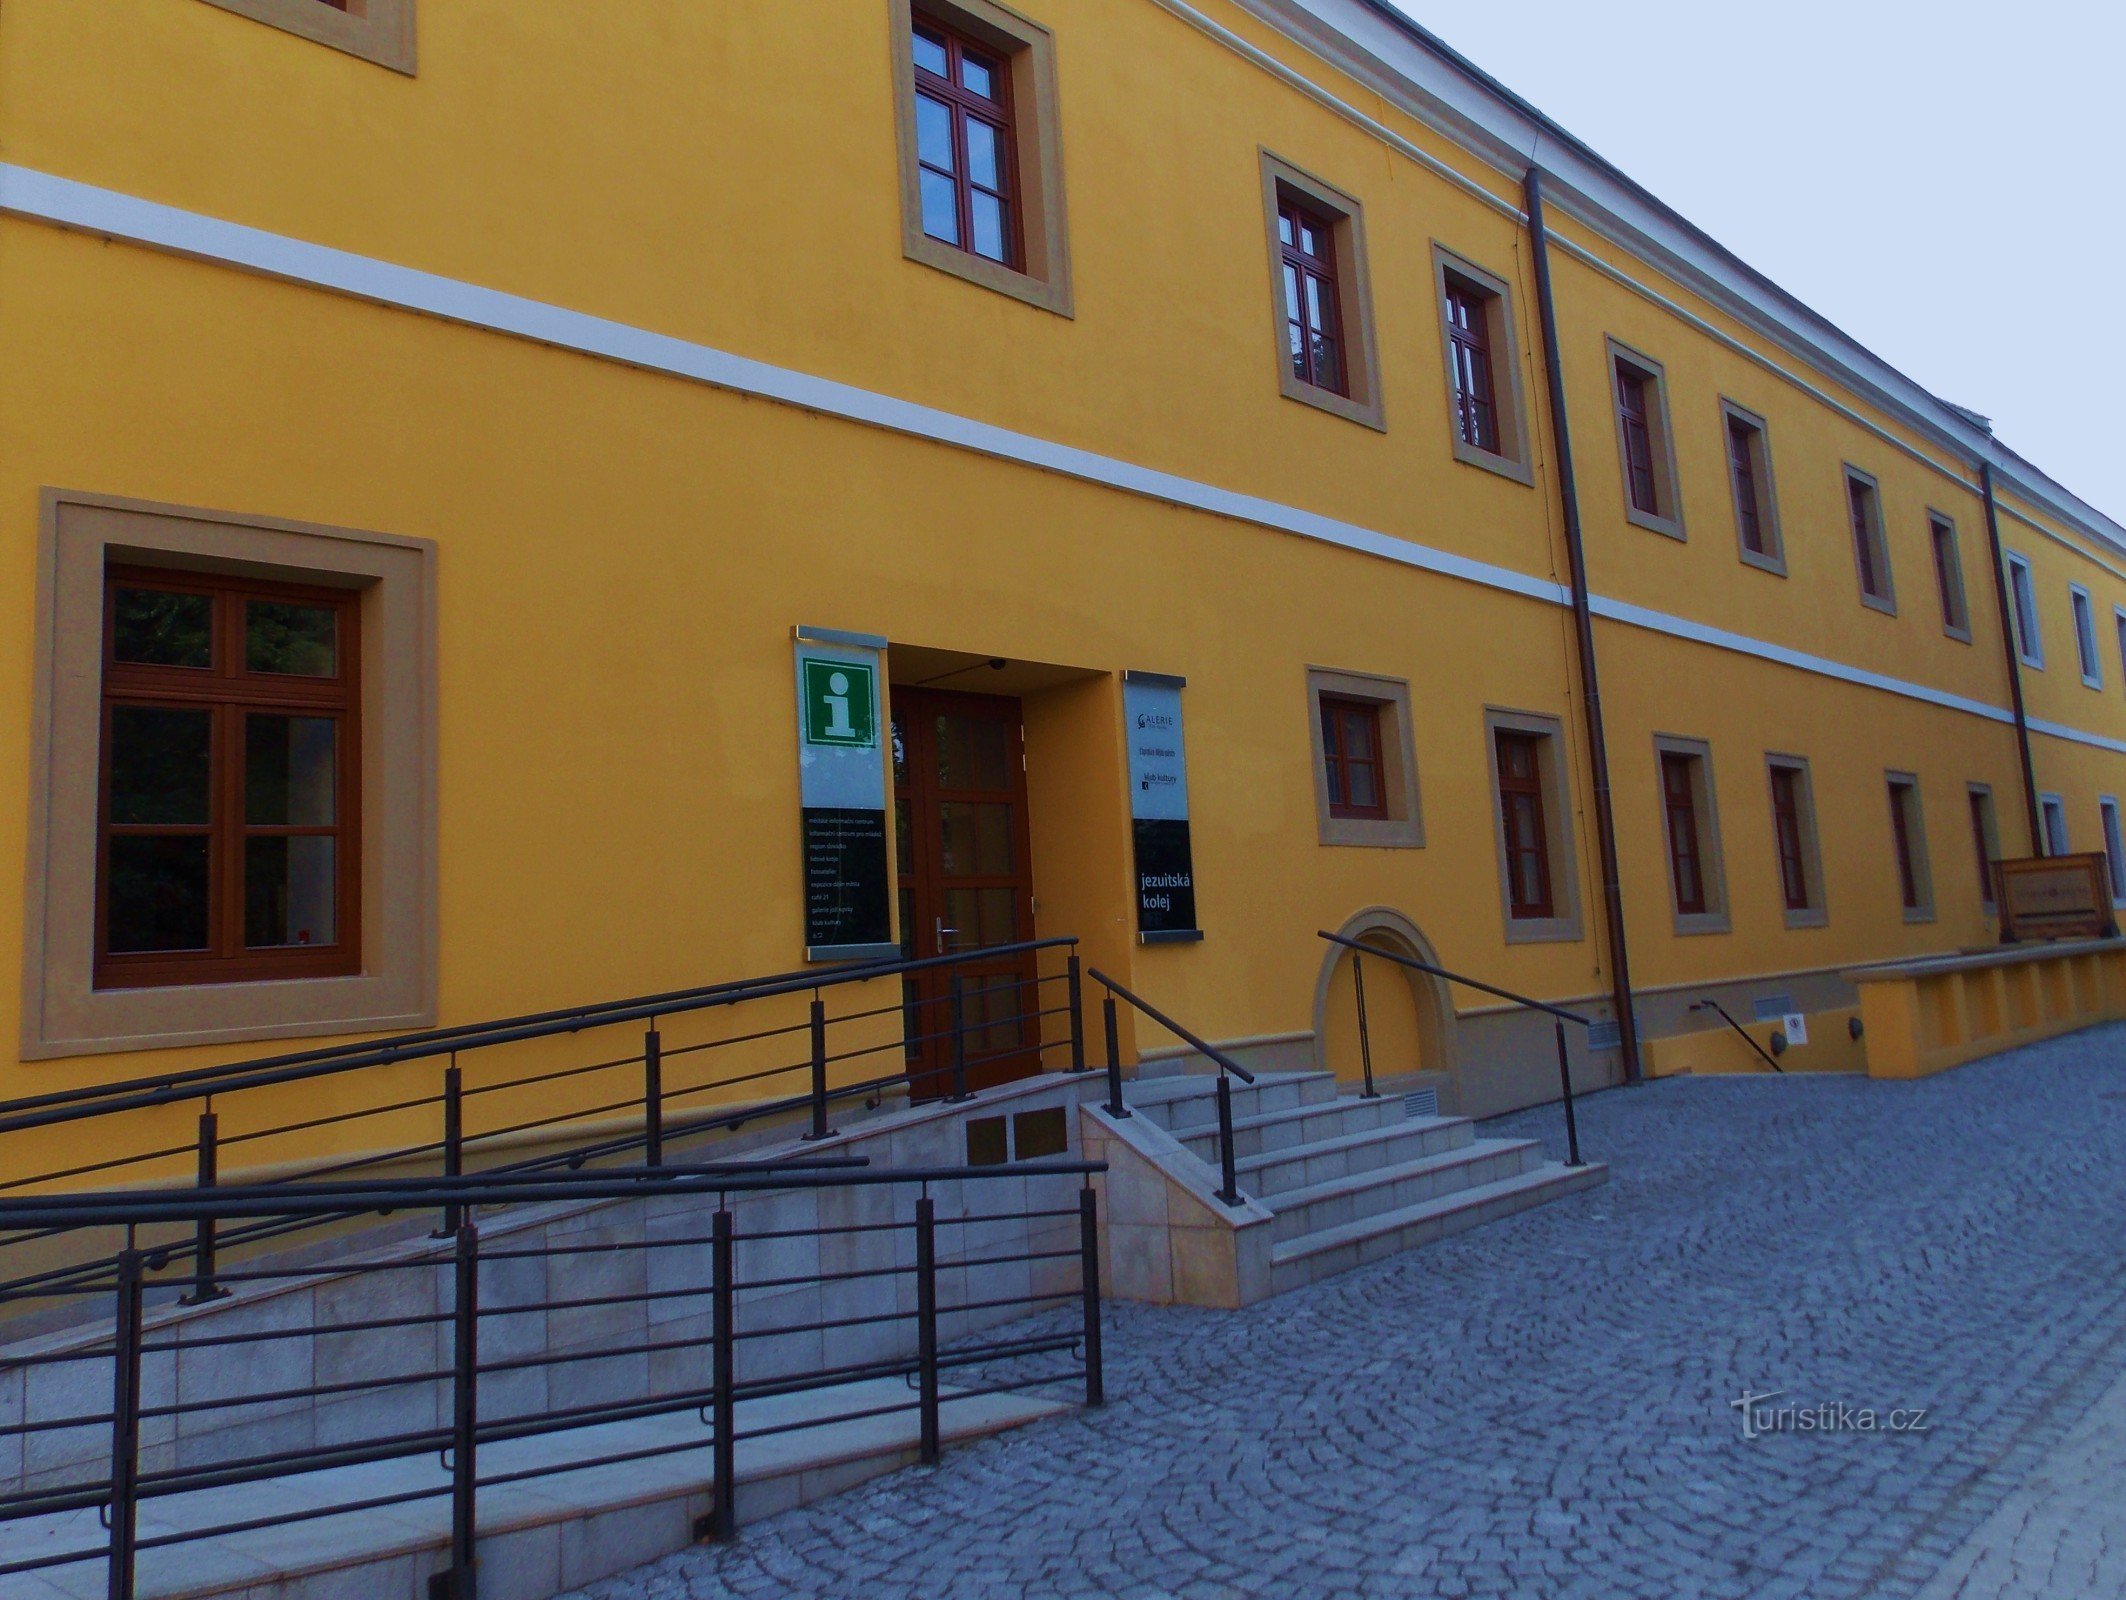 Словацький центр культури і традицій в Уг. Градішти